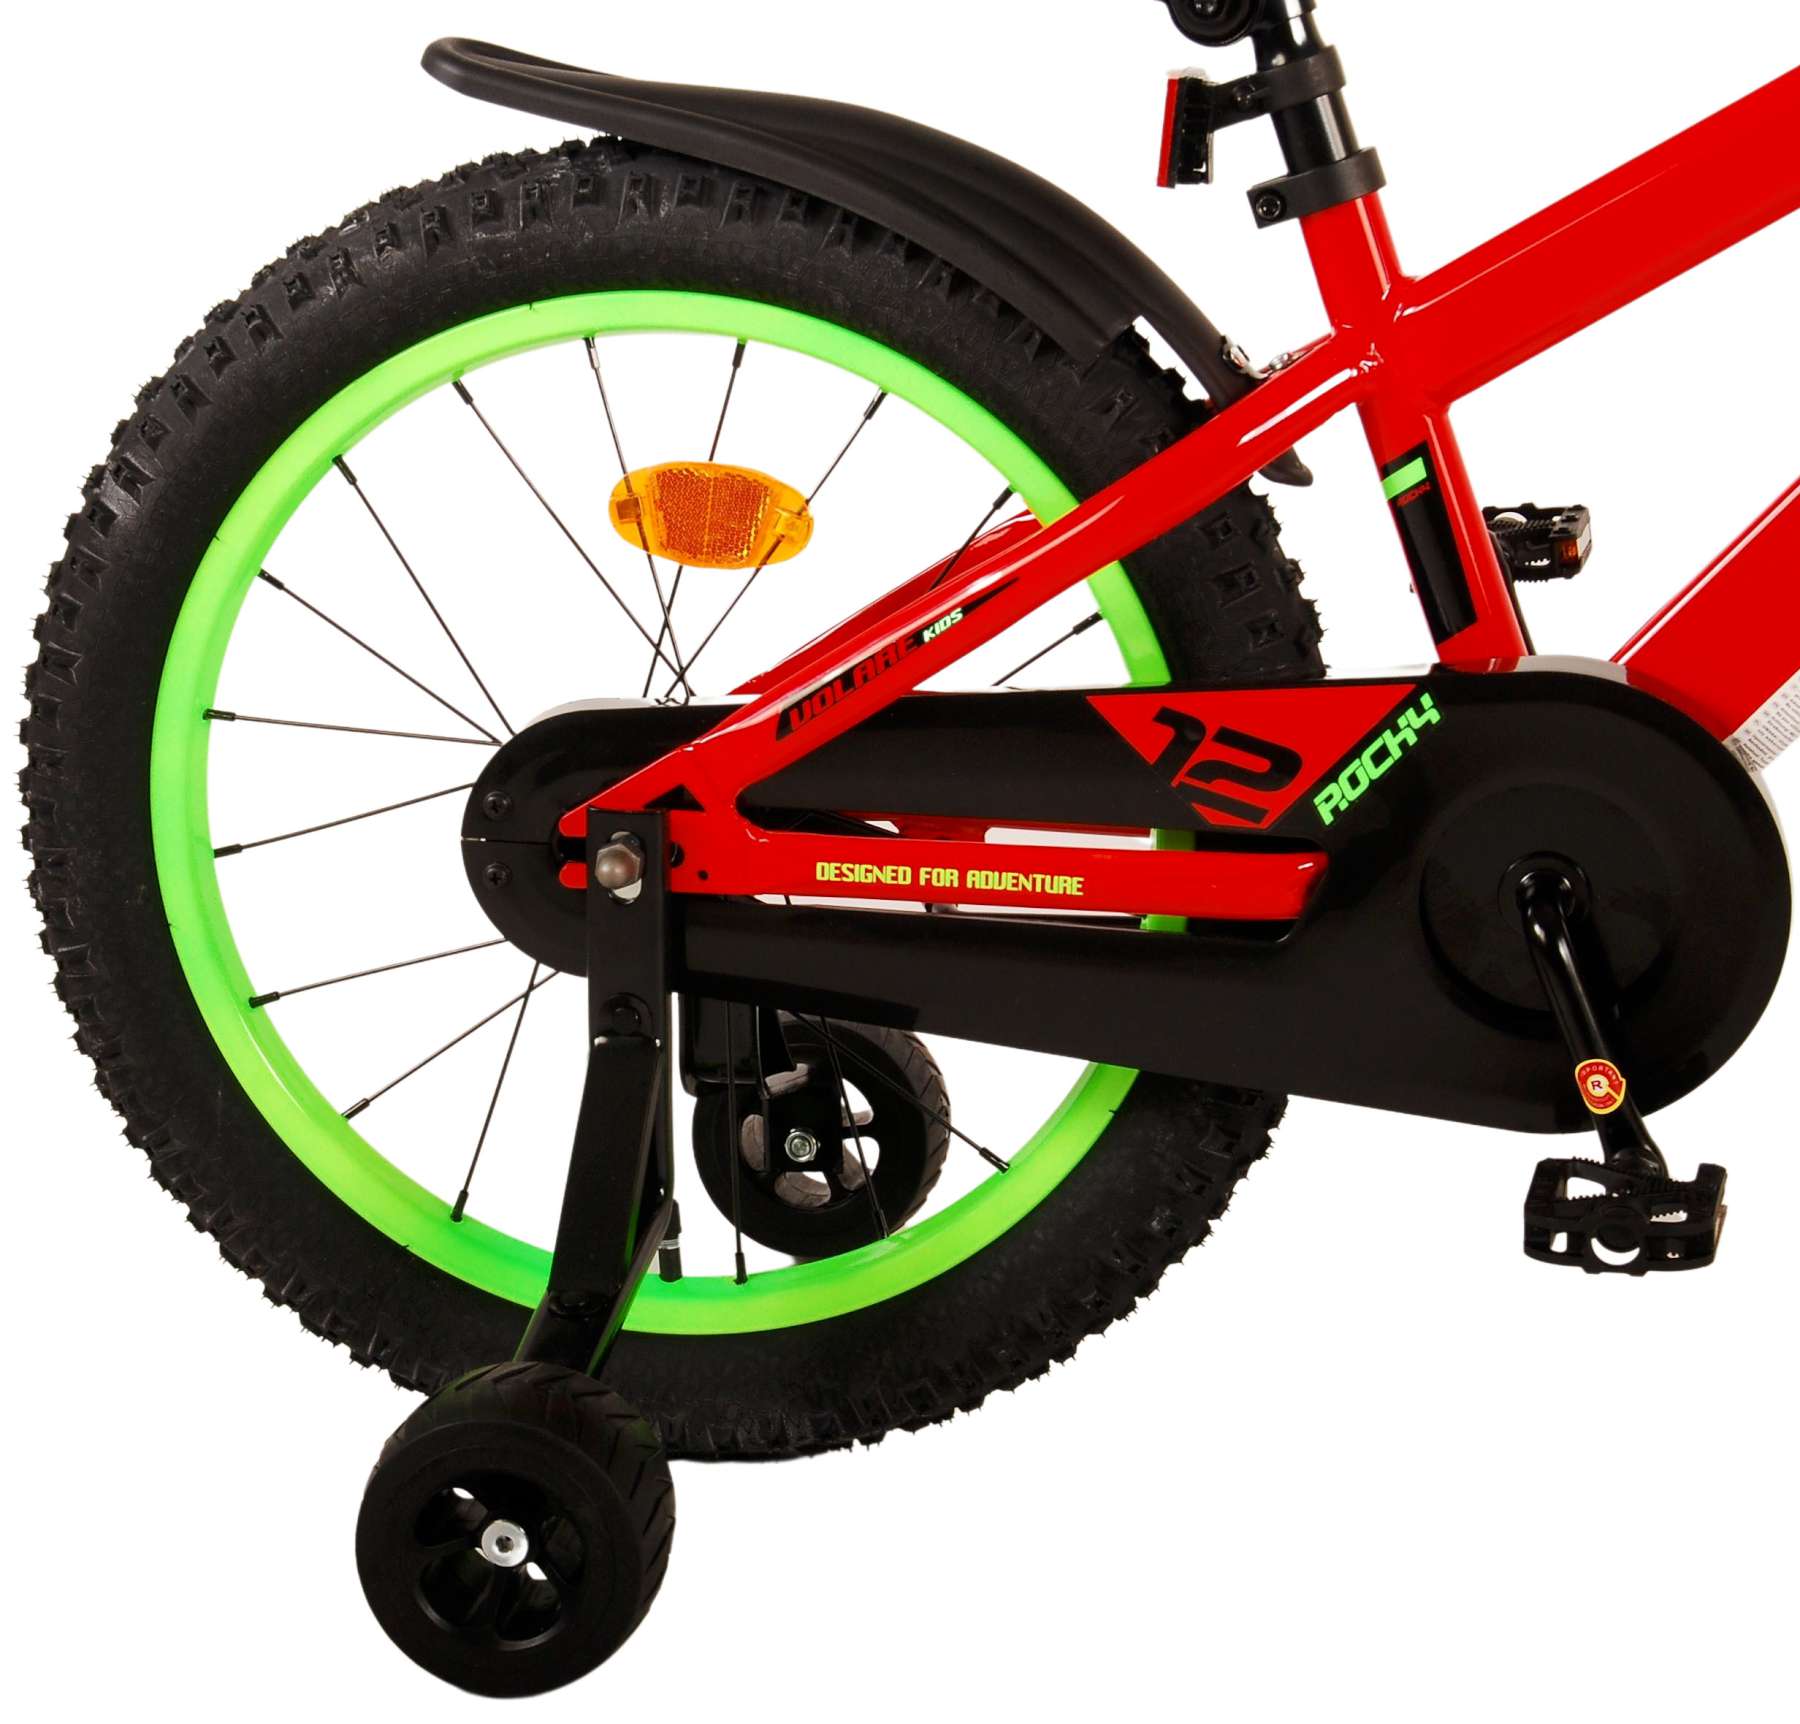 Kinderfahrrad Rocky Fahrrad für Jungen 18 Zoll Kinderrad in Rot